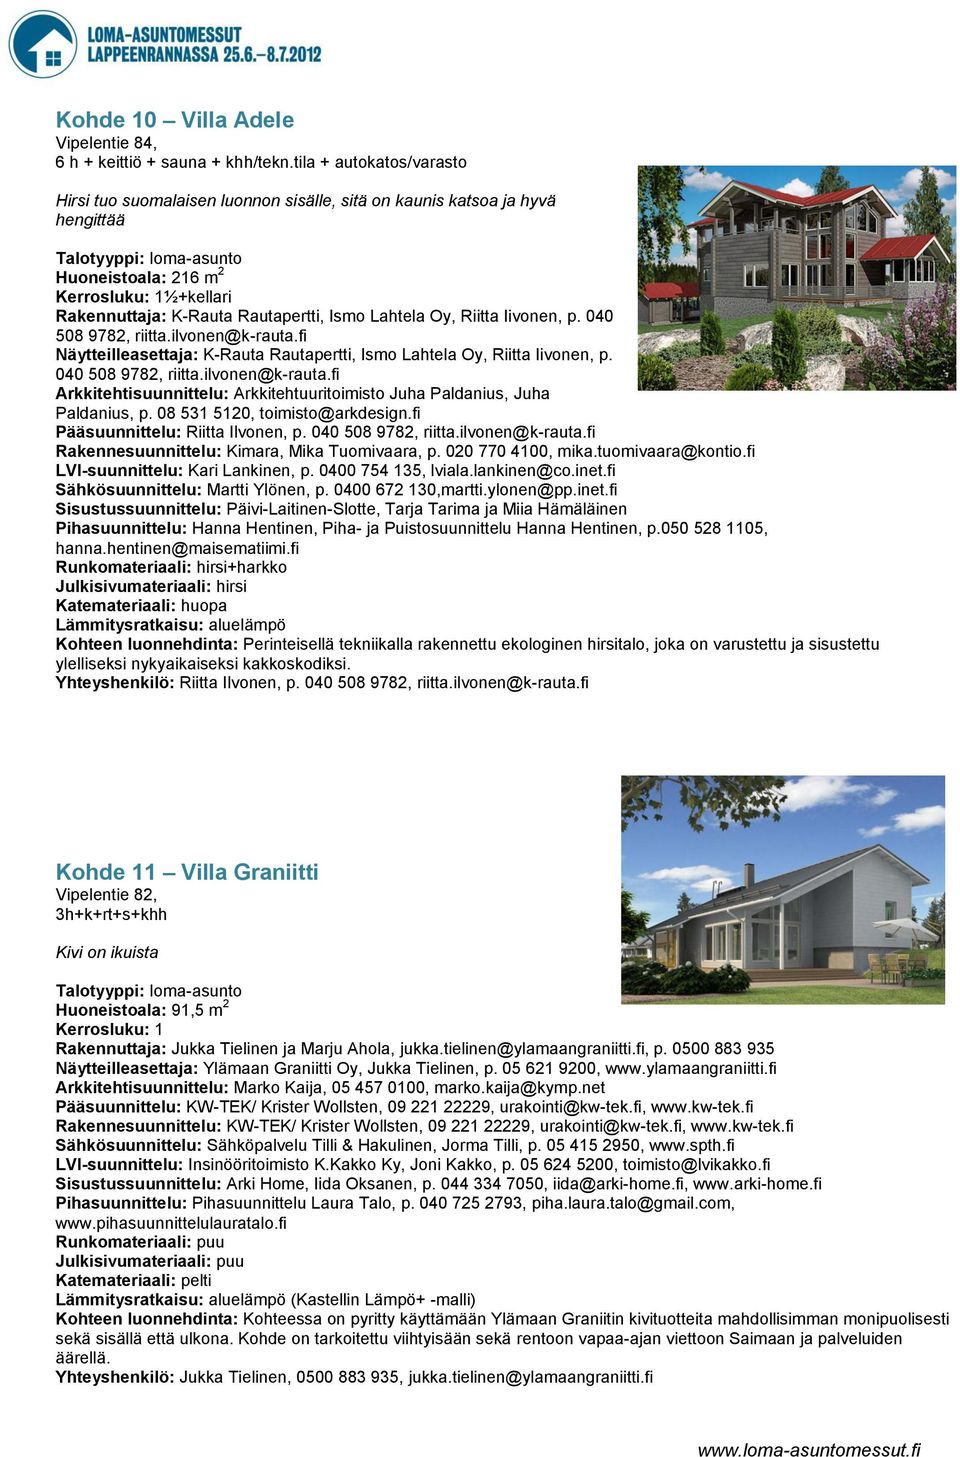 Oy, Riitta Iivonen, p. 040 508 9782, riitta.ilvonen@k-rauta.fi Näytteilleasettaja: K-Rauta Rautapertti, Ismo Lahtela Oy, Riitta Iivonen, p. 040 508 9782, riitta.ilvonen@k-rauta.fi Arkkitehtisuunnittelu: Arkkitehtuuritoimisto Juha Paldanius, Juha Paldanius, p.